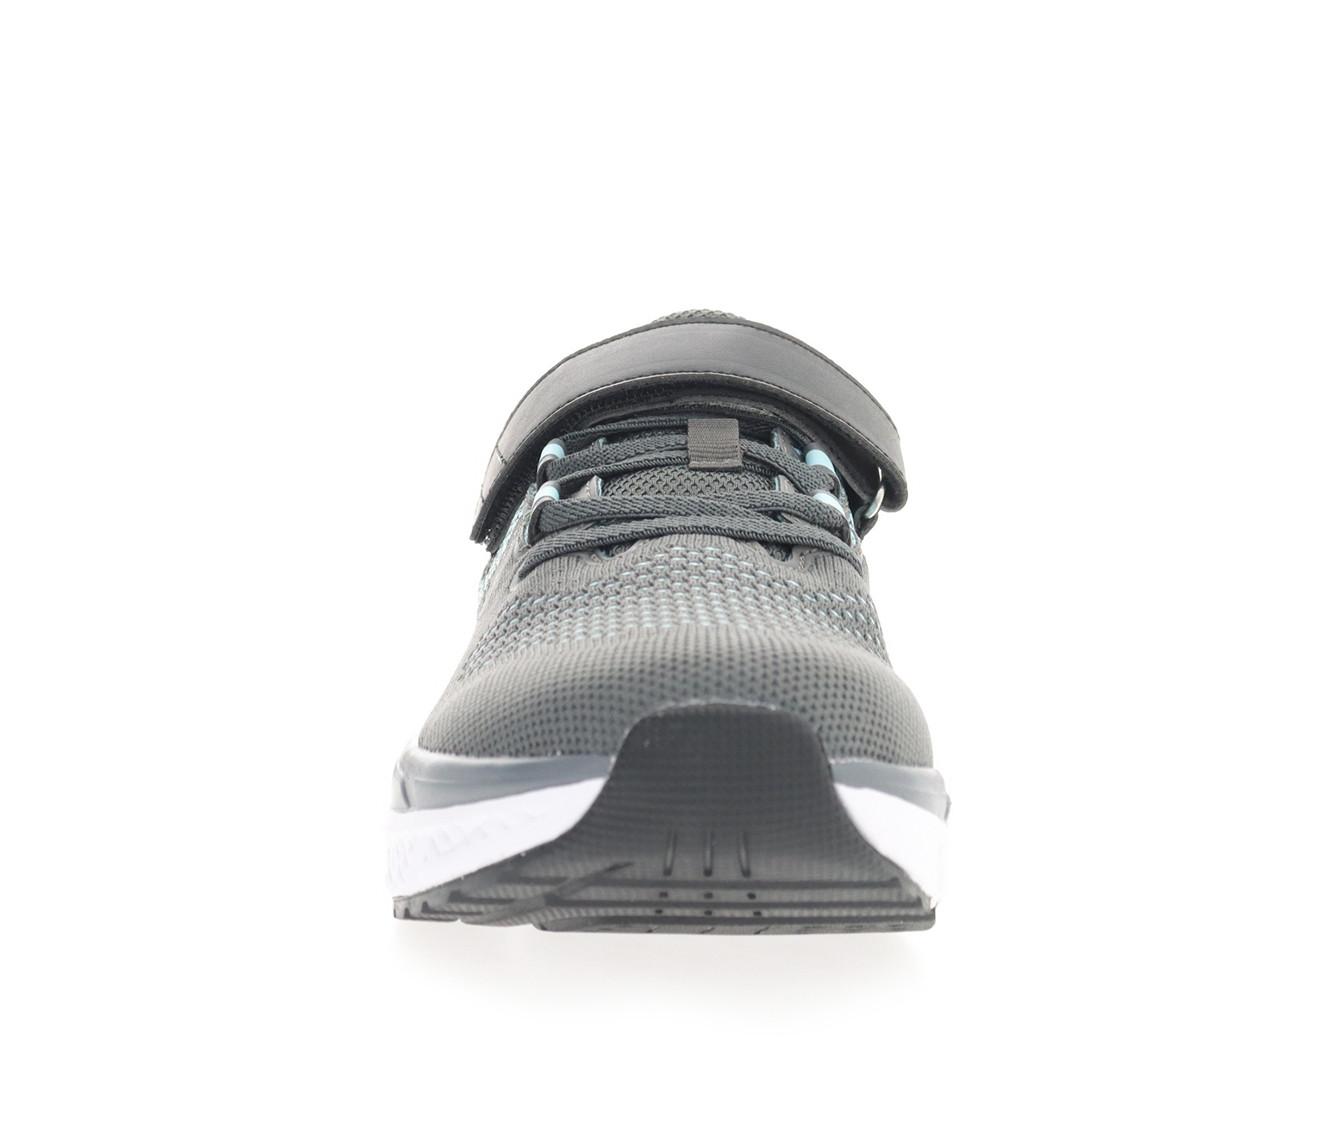 Women's Propet Propet Ultra FX Comfort Sneakers